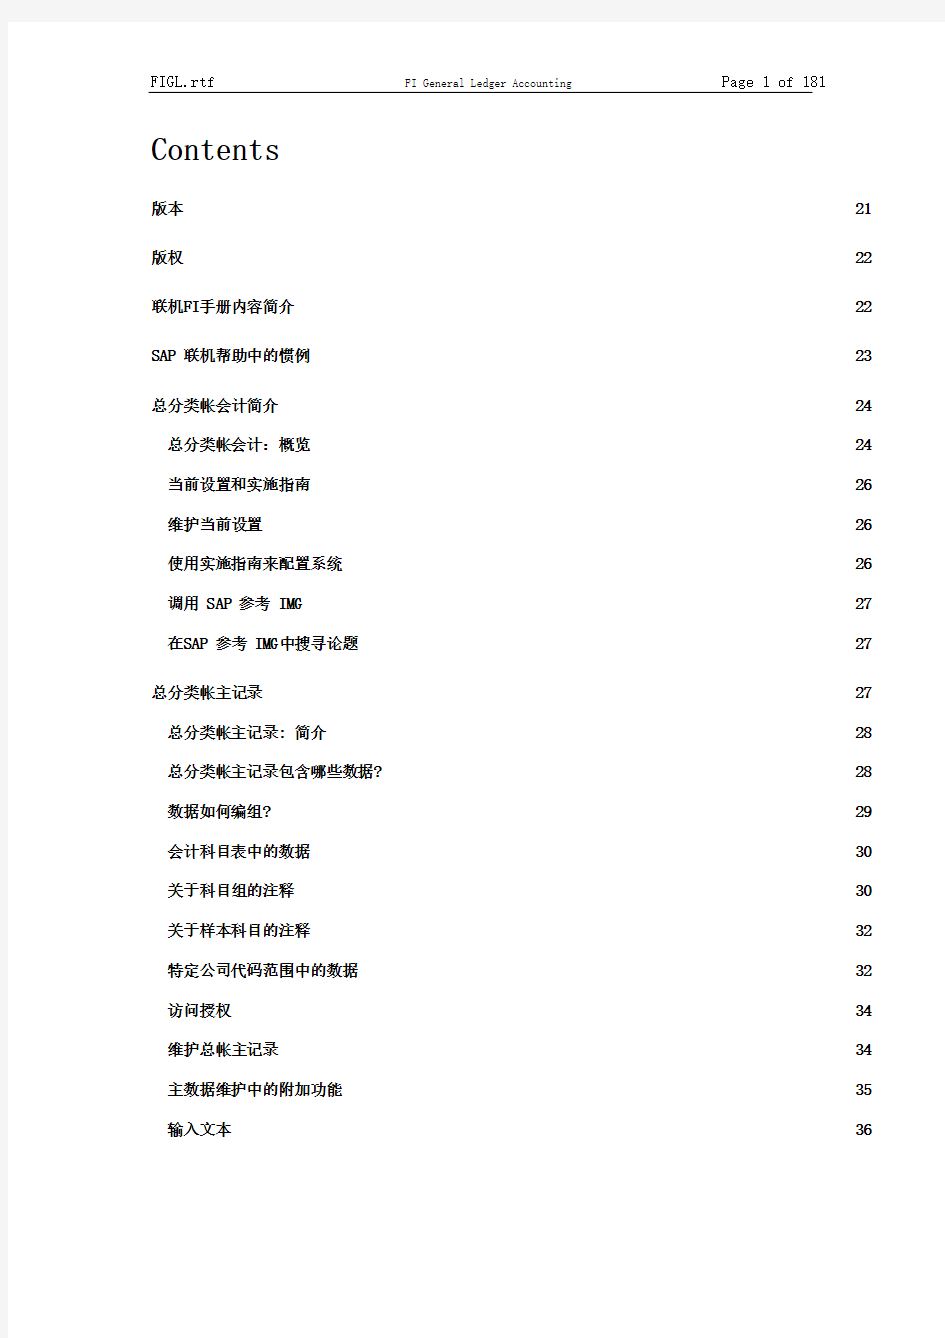 sap中文使用手册——FI总账